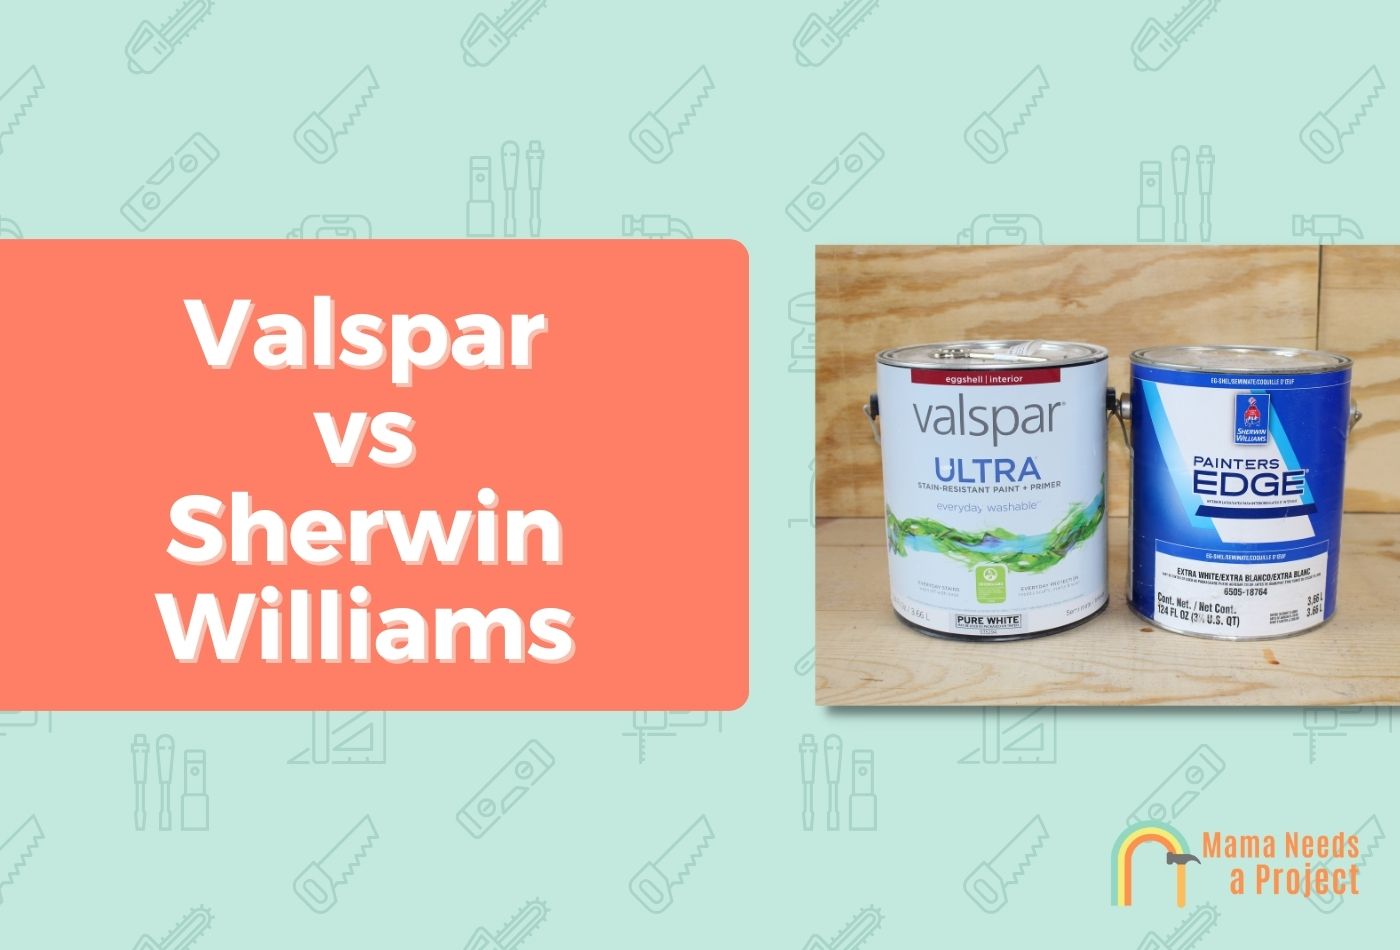 Valspar vs Sherwin Williams